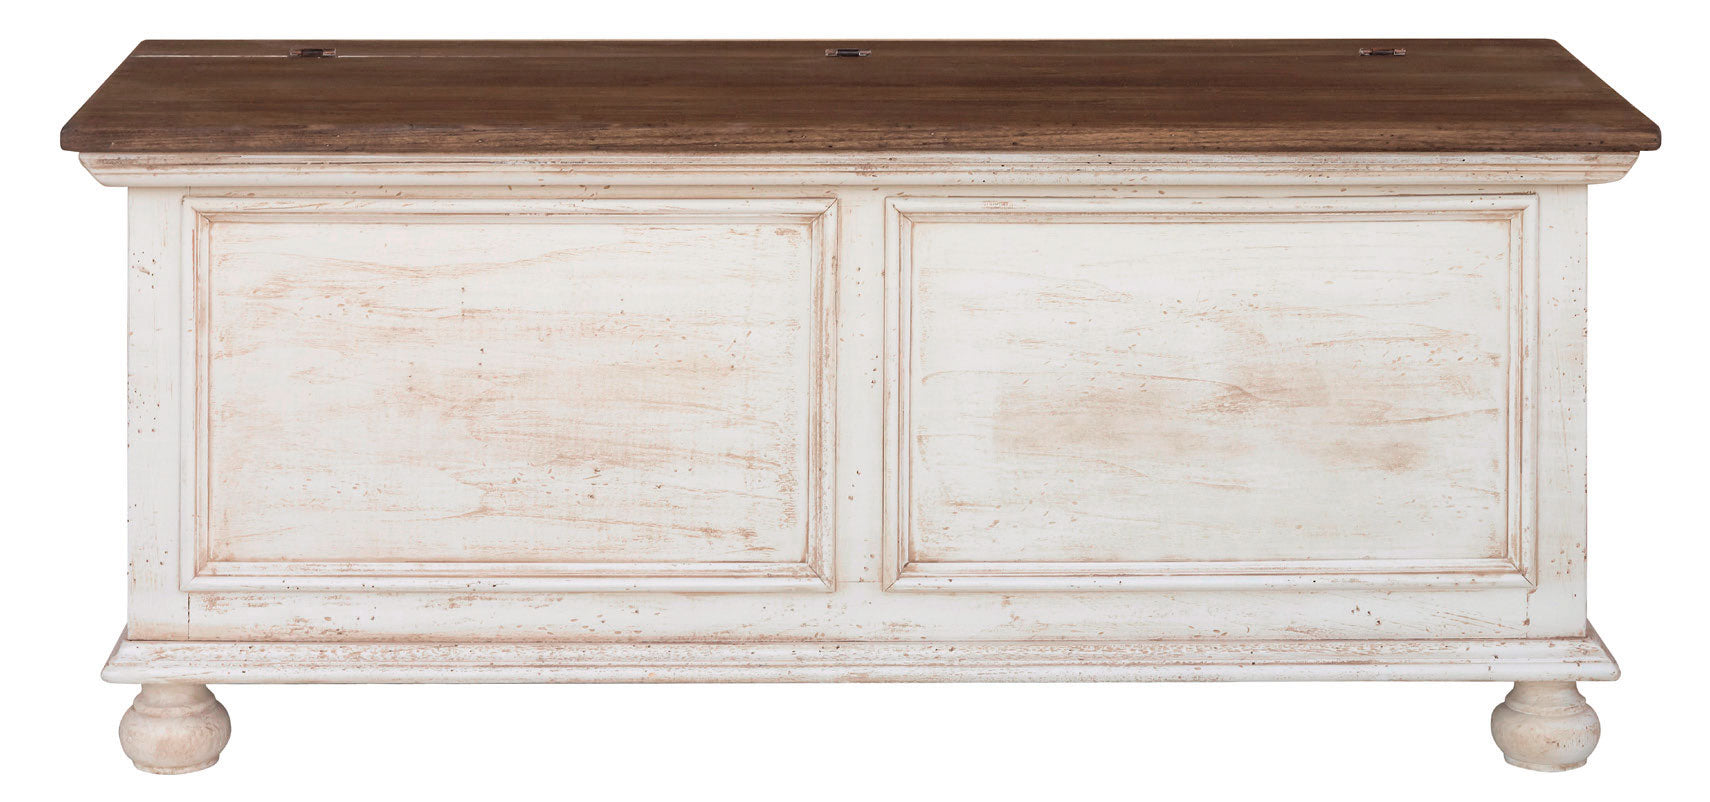 Cassapanca da ingresso in legno stile classico cm 120x44x51h – Colly Shop